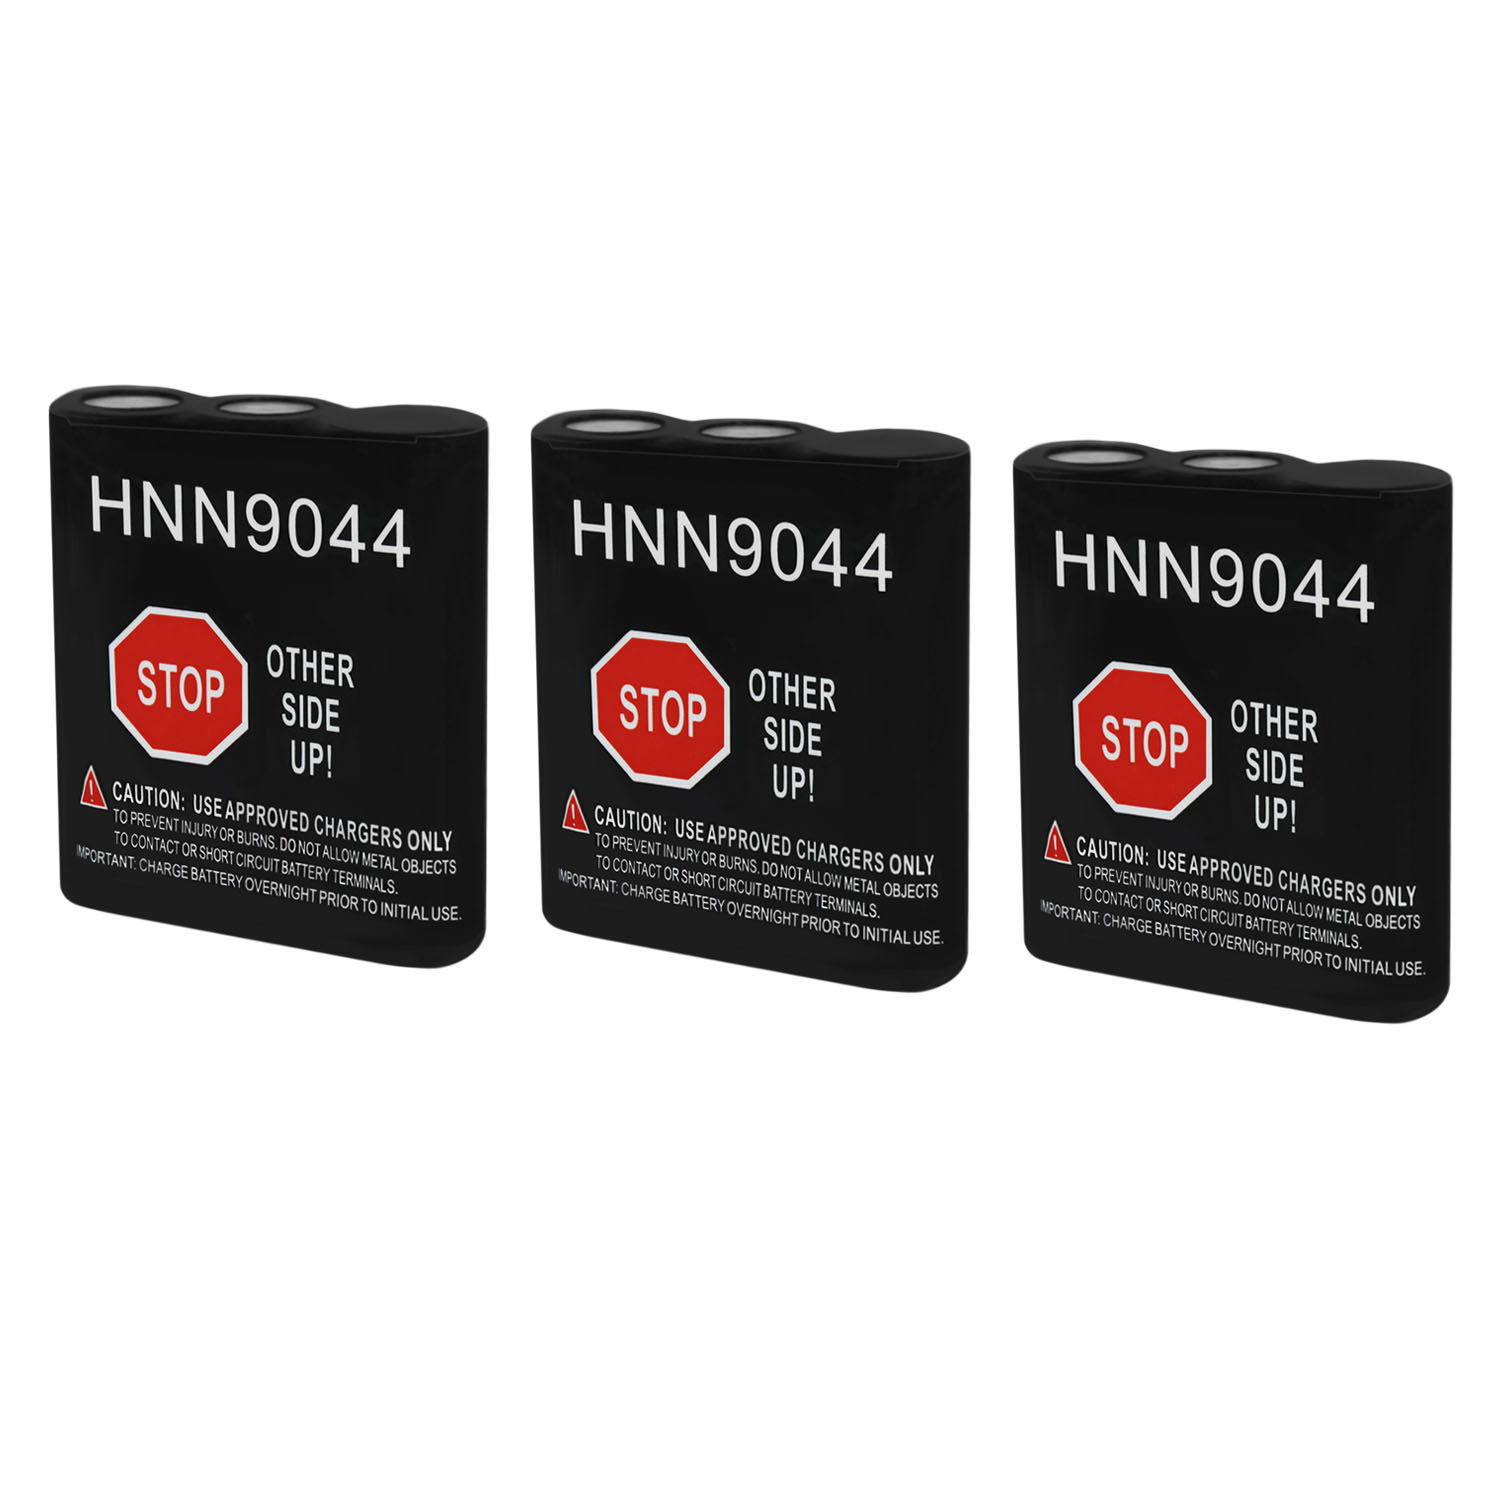 HNN9044 Replacement for Motorola HNN9056, HNN9056a - 3 Pack